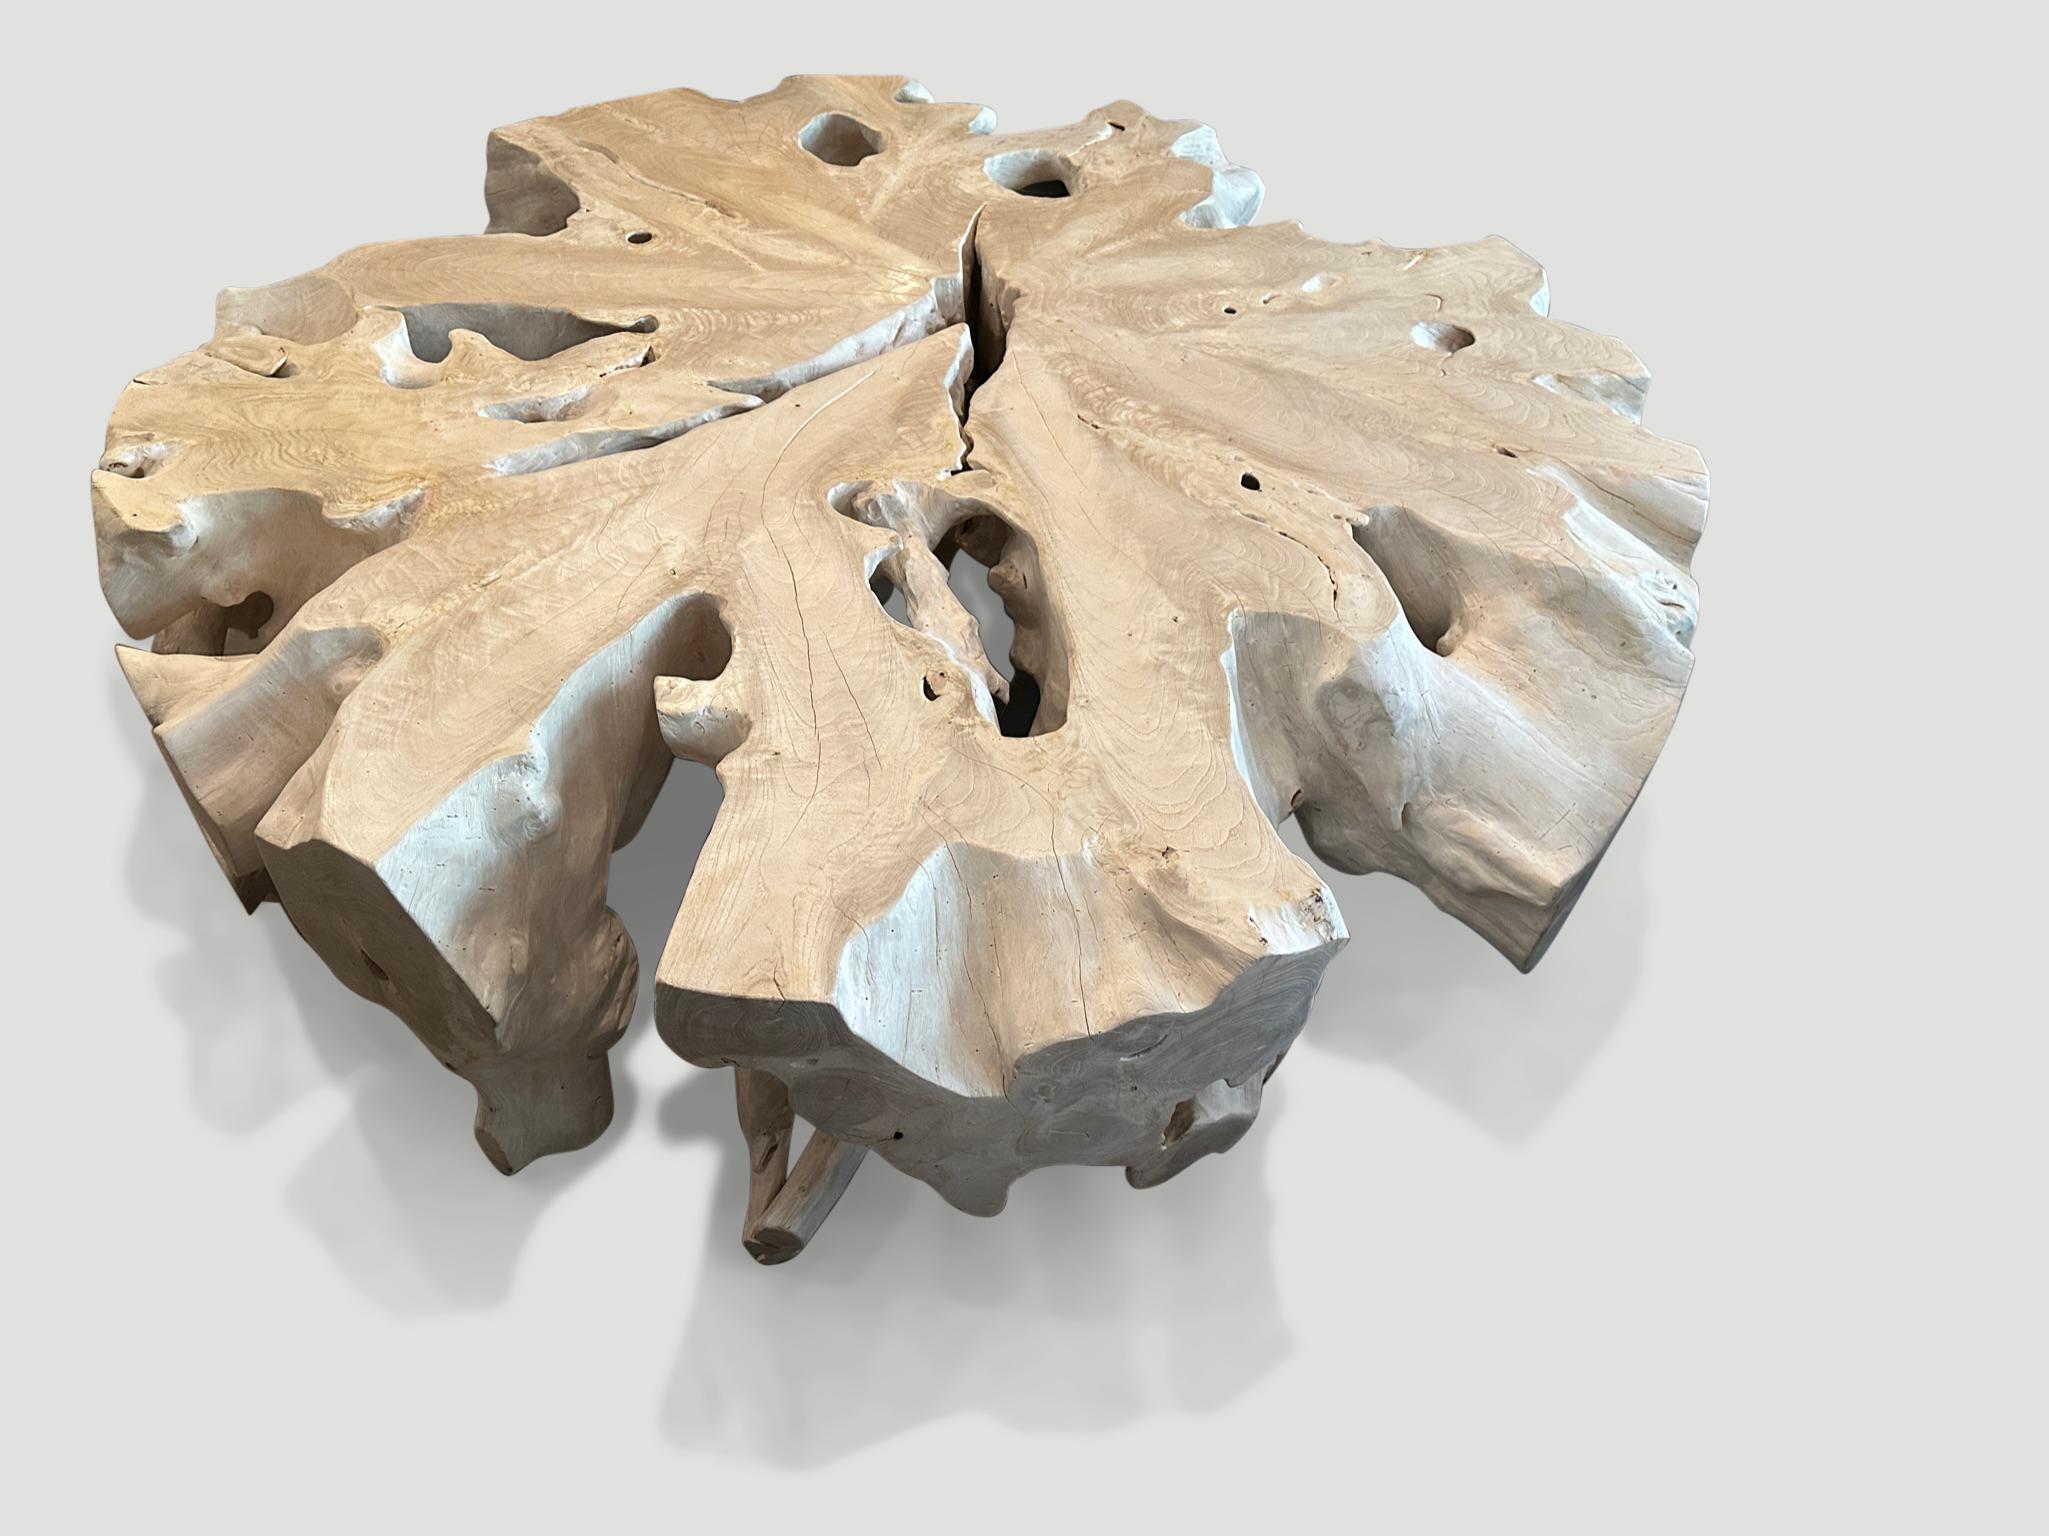 Impressionnante table basse en teck. Sculpté à la main dans cette belle forme tout en respectant le bois organique naturel. Nous avons ajouté un vernis sur le dessus et les parties latérales pour un contraste osseux léger et une protection. Tout est